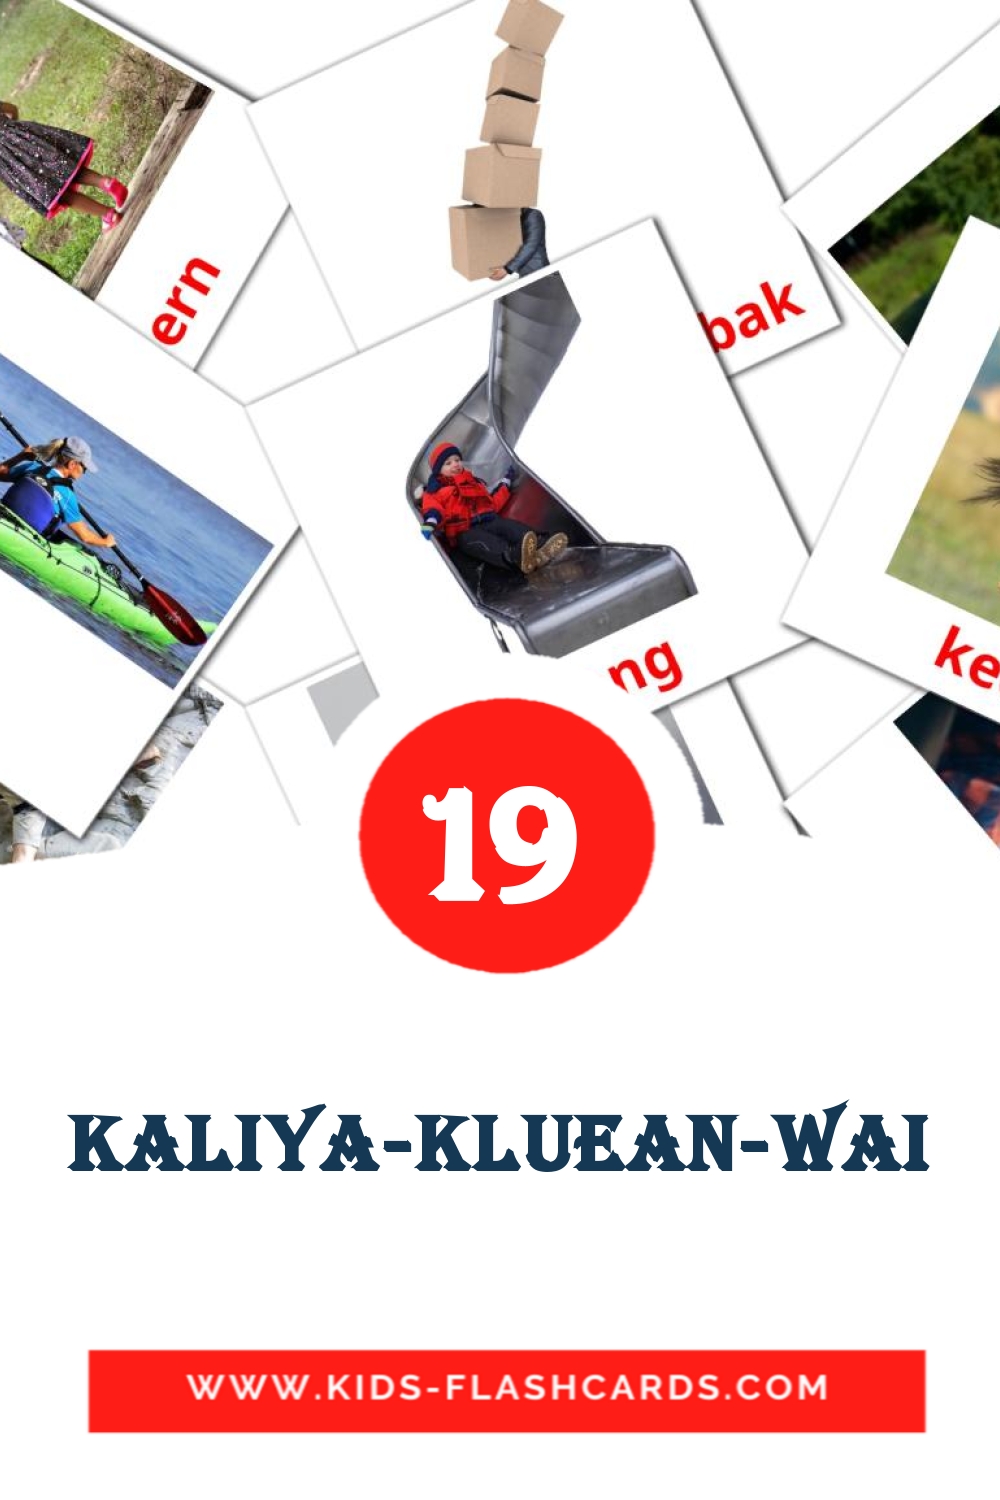 19 cartes illustrées de Kaliya-kluean-wai pour la maternelle en amharique